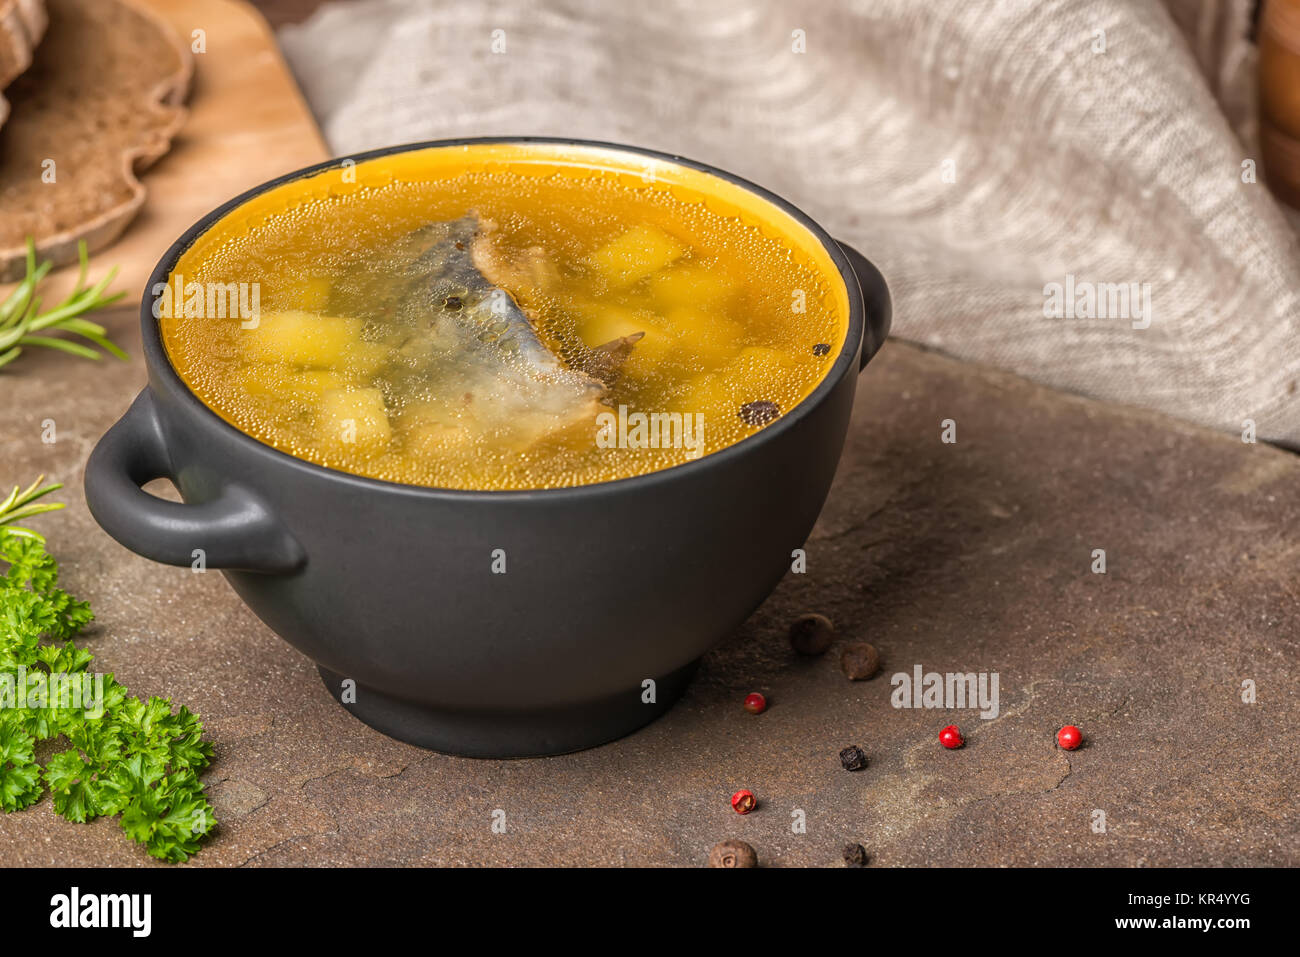 Trasparente la zuppa di pesce con lo storione, patate in piastra nera, decorato di aglio, prezzemolo in foglie, il cucchiaio di legno e tagliate il pane di segale, spazio di copia Foto Stock